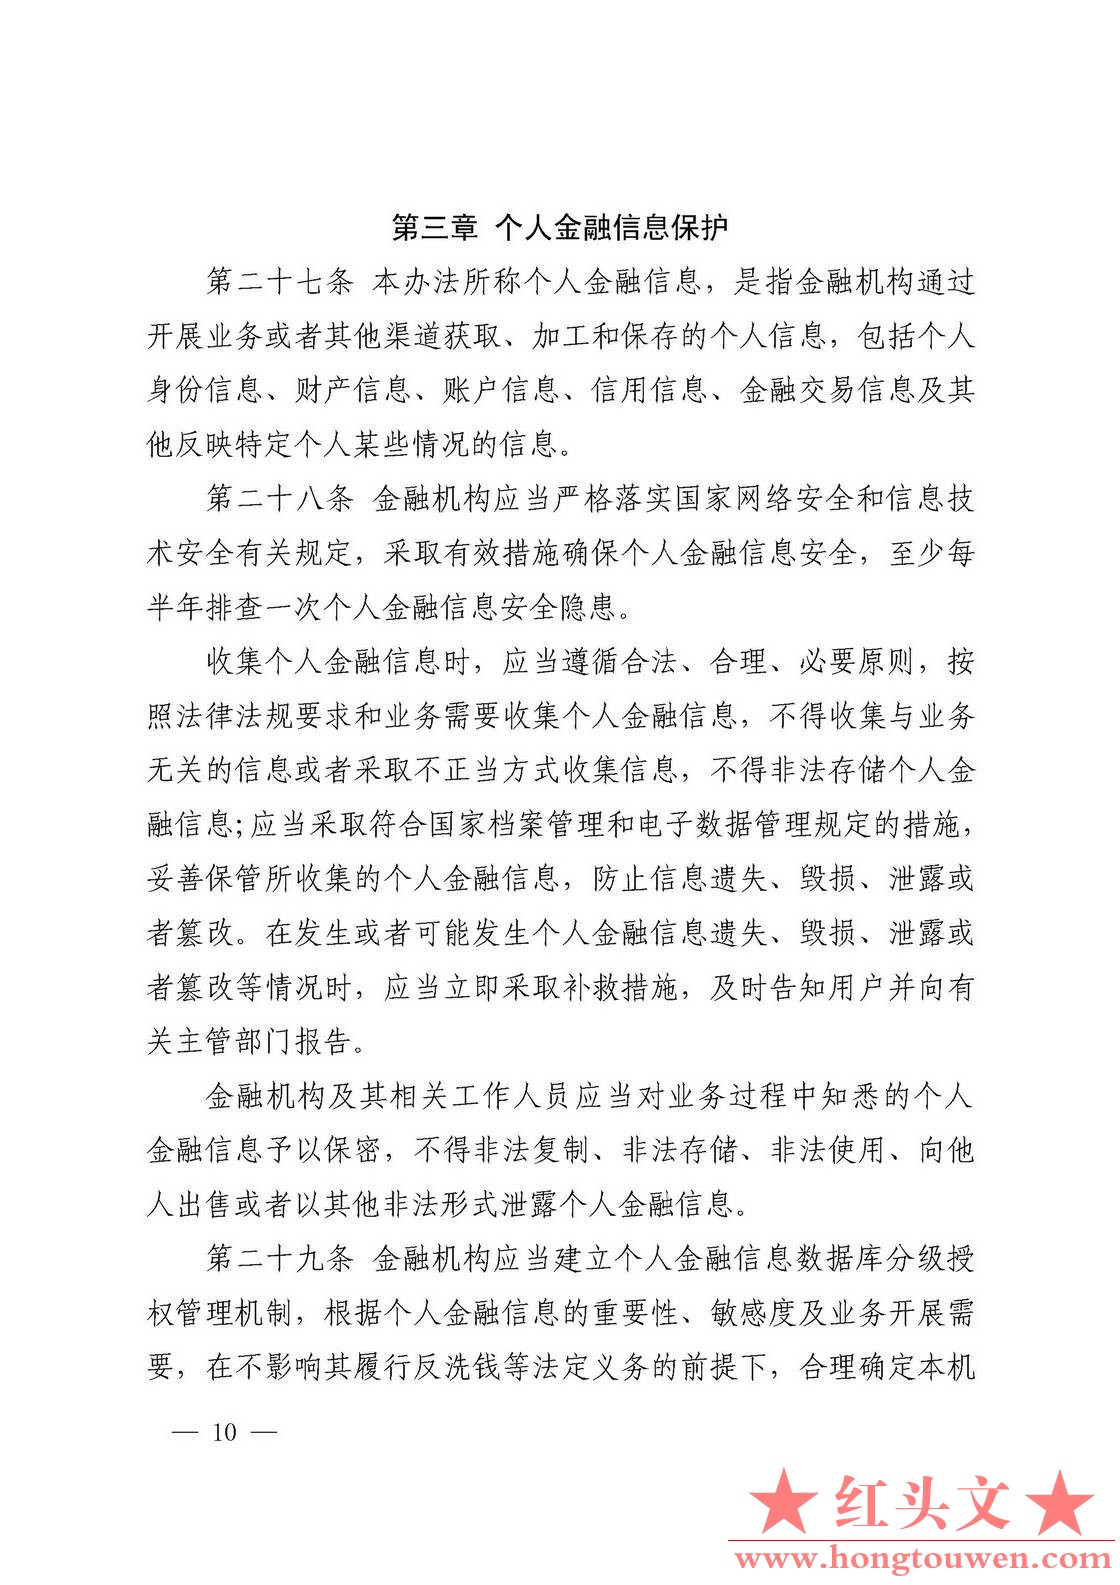 银发[2016]314号-中国人民银行关于印发《中国人民银行金融消费者权益保护实施办法》的.jpg